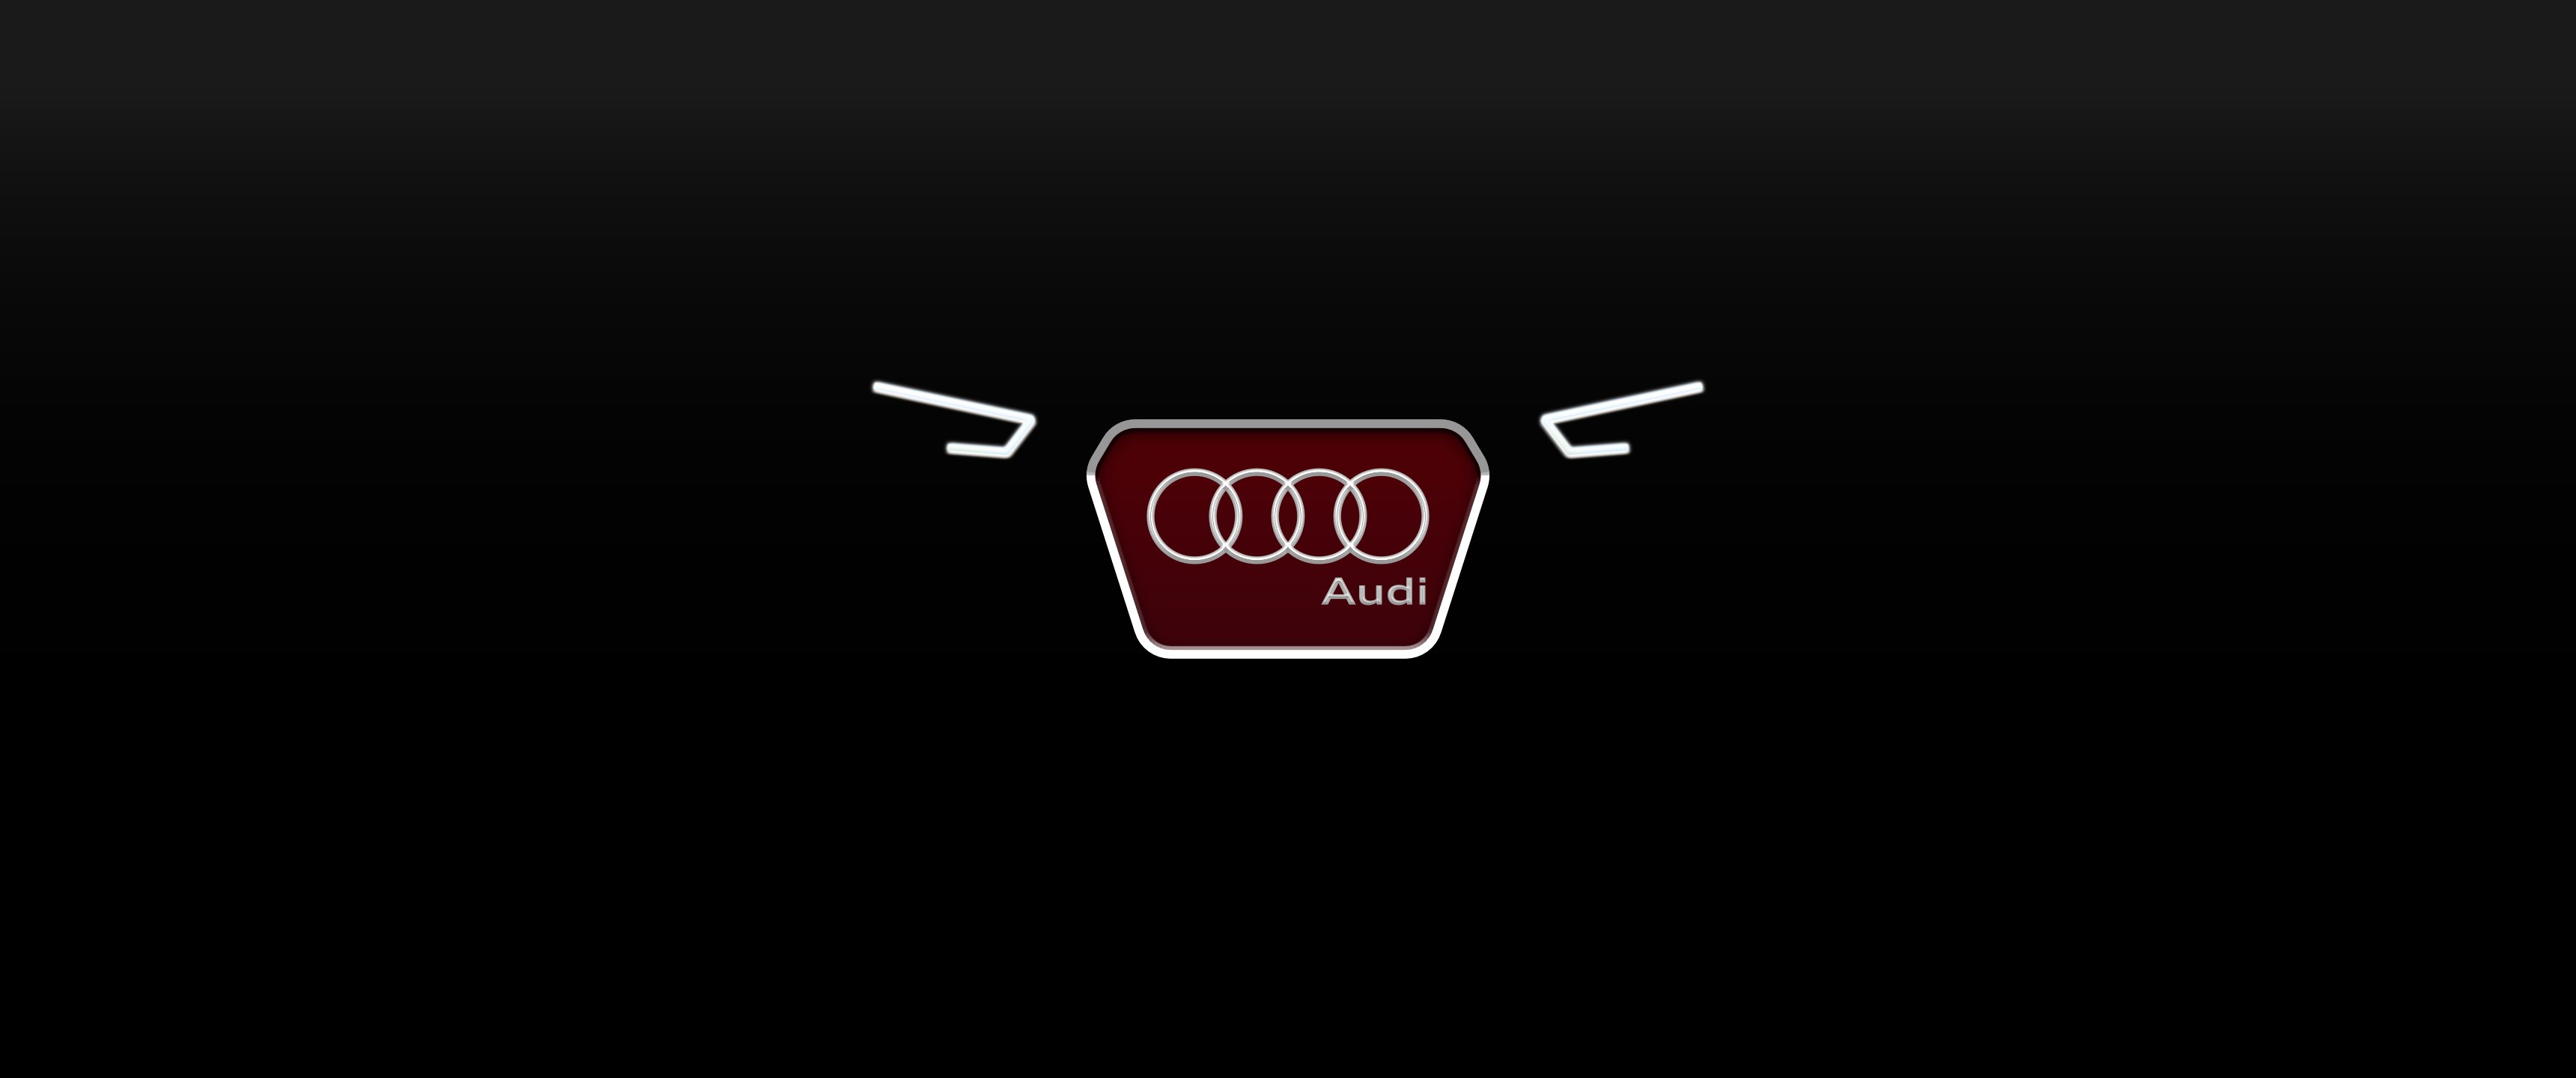 Hd Wallpaper Audi Logo